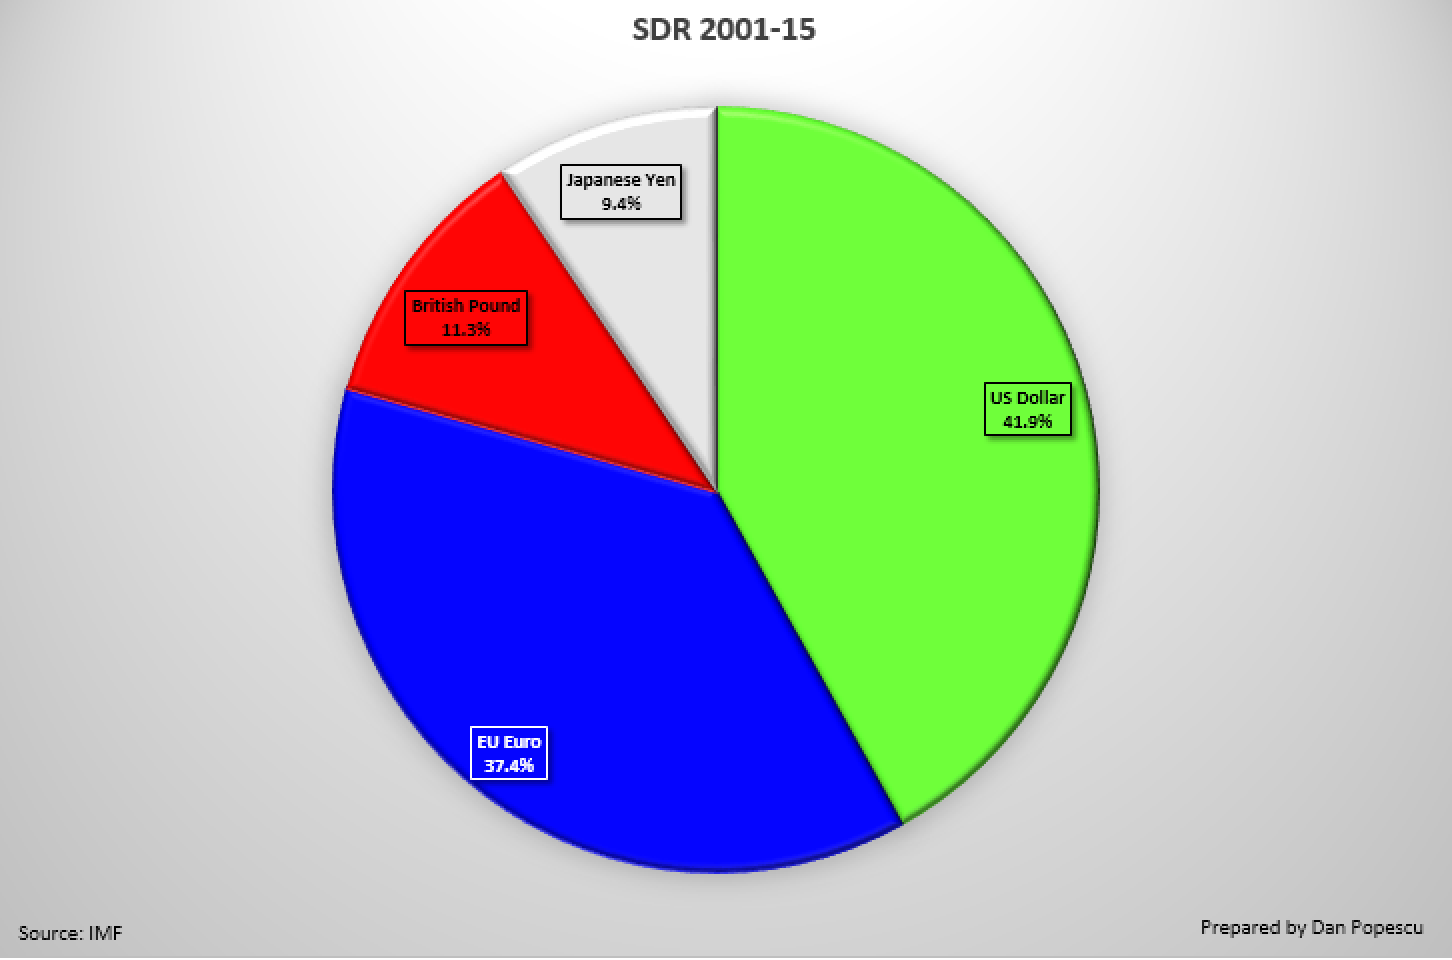 SDR 2016 - 2020